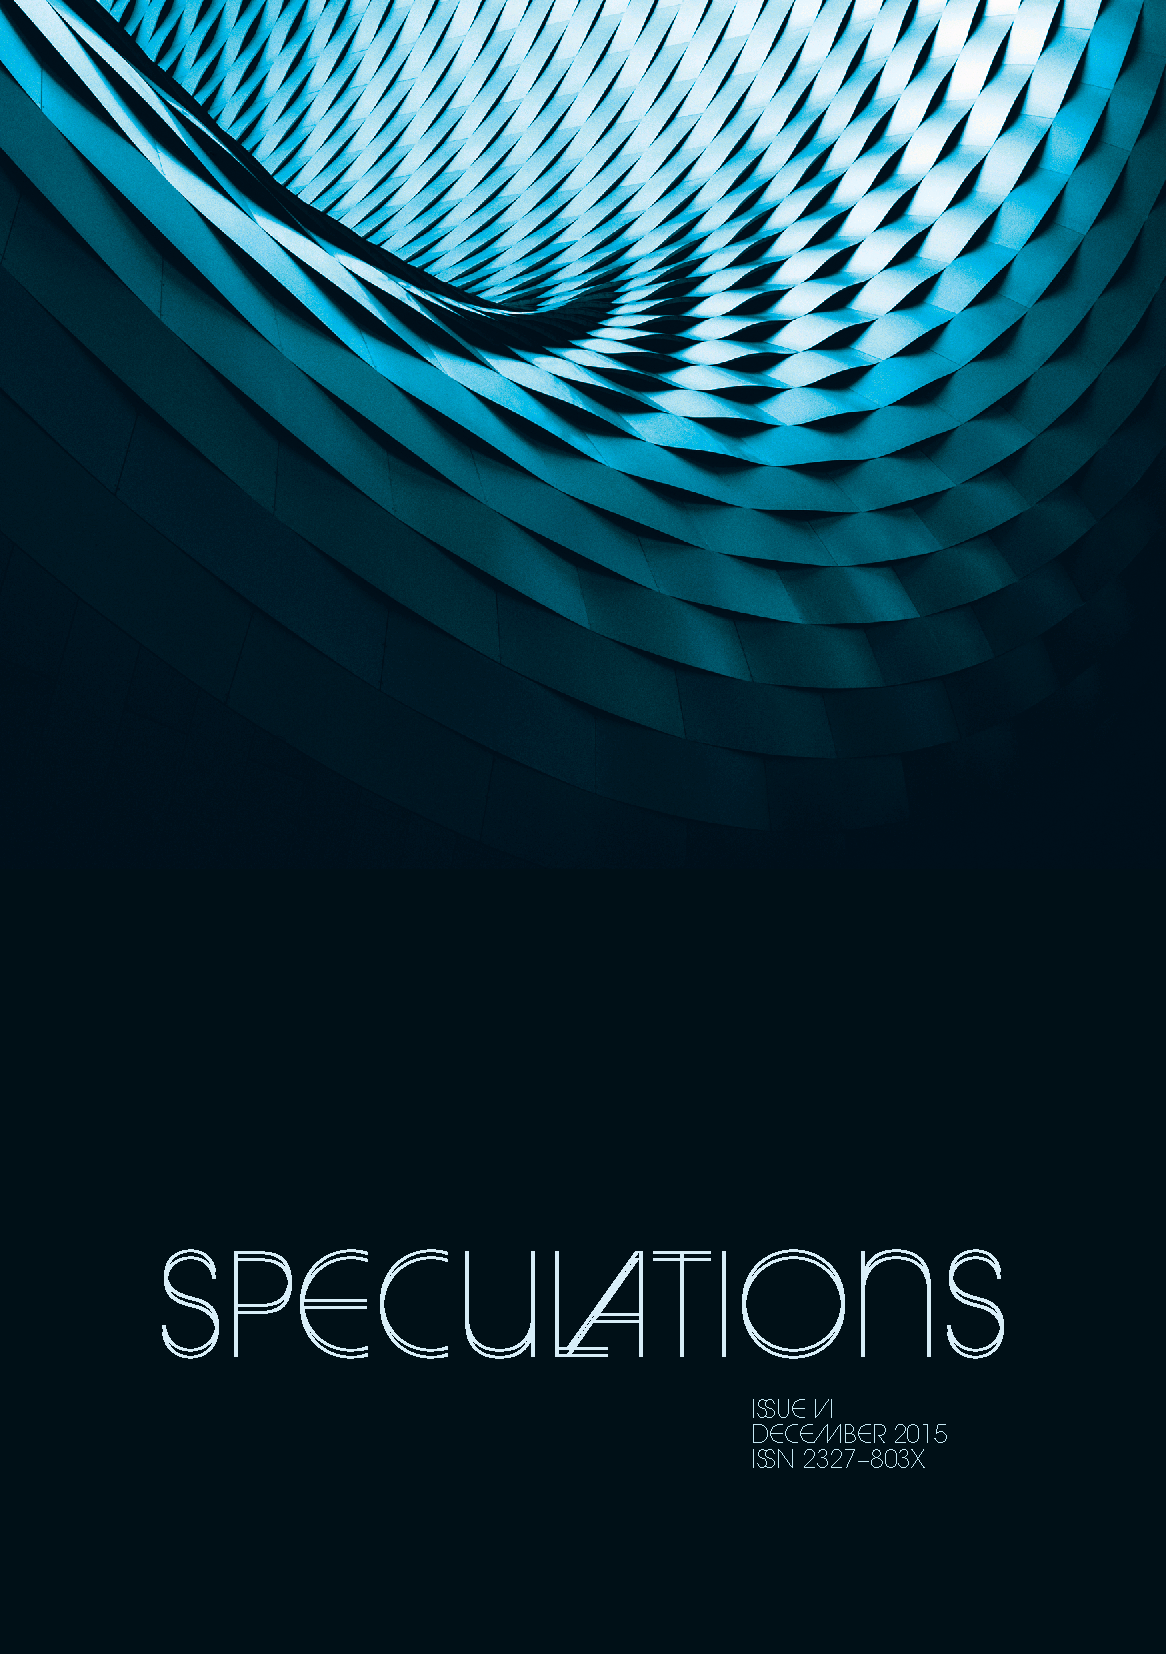 Speculations VI (punctum books, 2015)